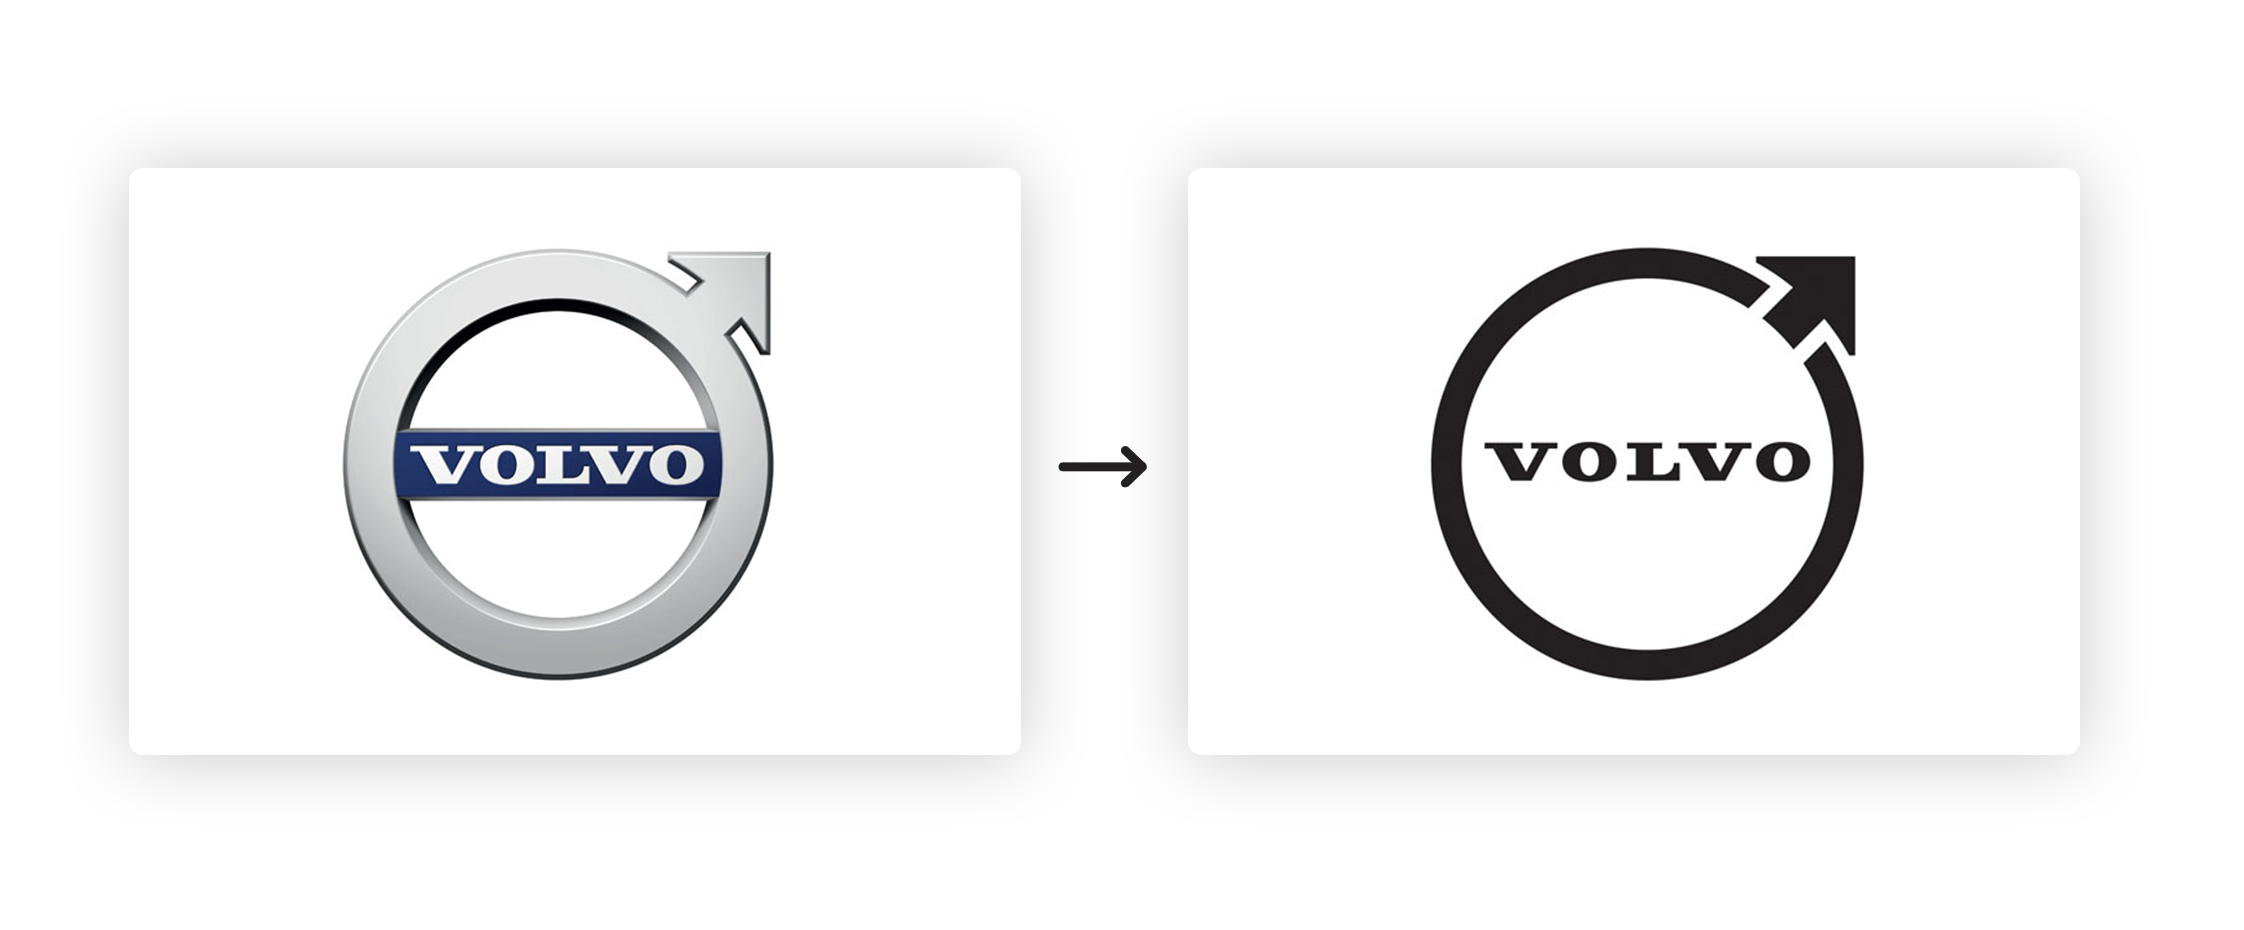 Volvo Rebrand